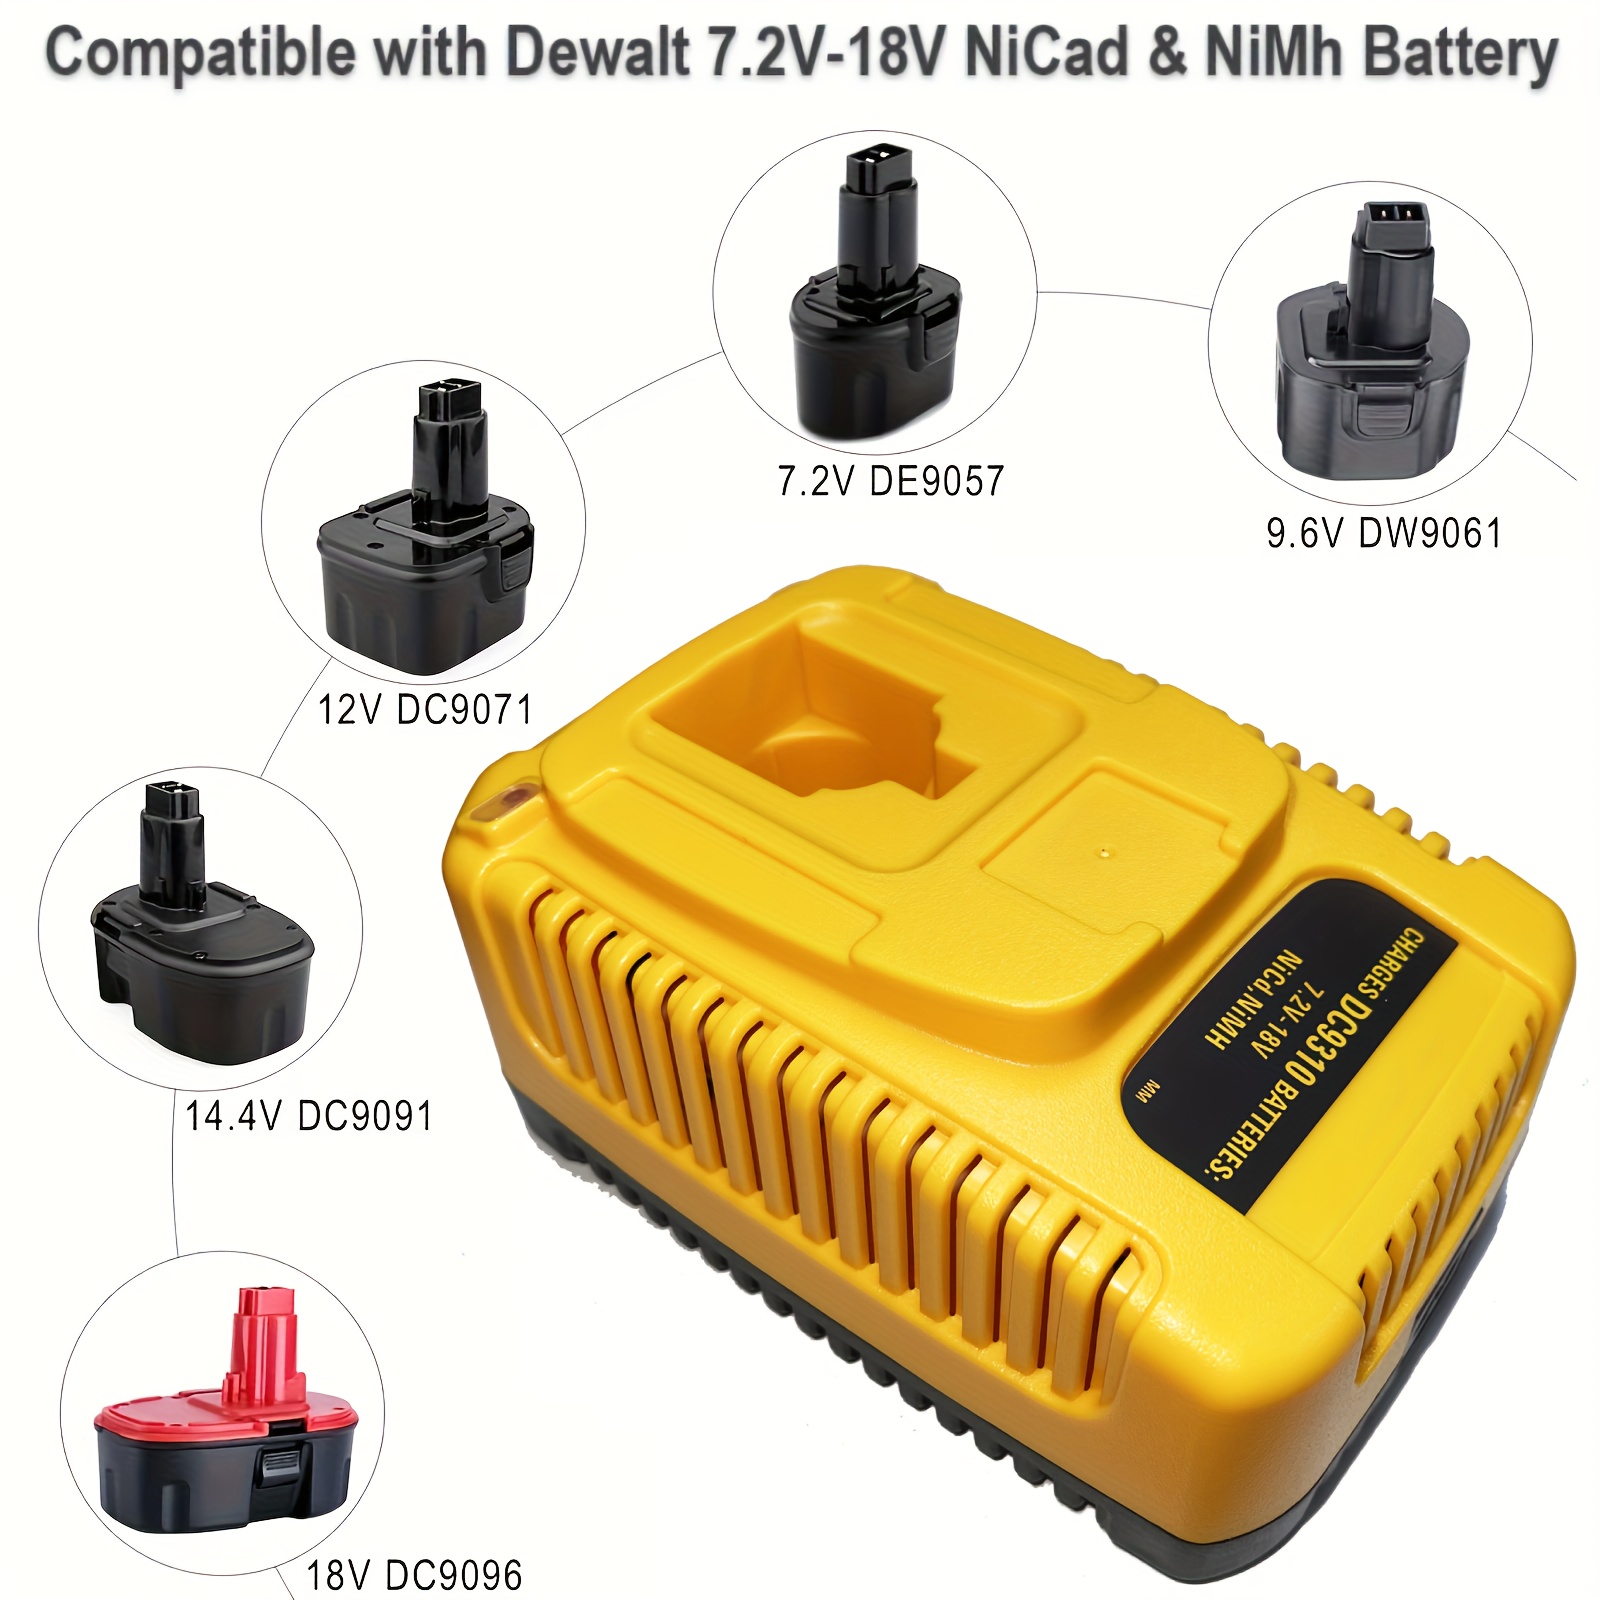 Yellow Fast Battery Charger for Dewalt 7.2V-18V XRP NI-CD NI-MH Battery  DC9096 DC9098 DC9099 DC9091 DC9071 DE9057 DW9096 DW9094 DW9072 